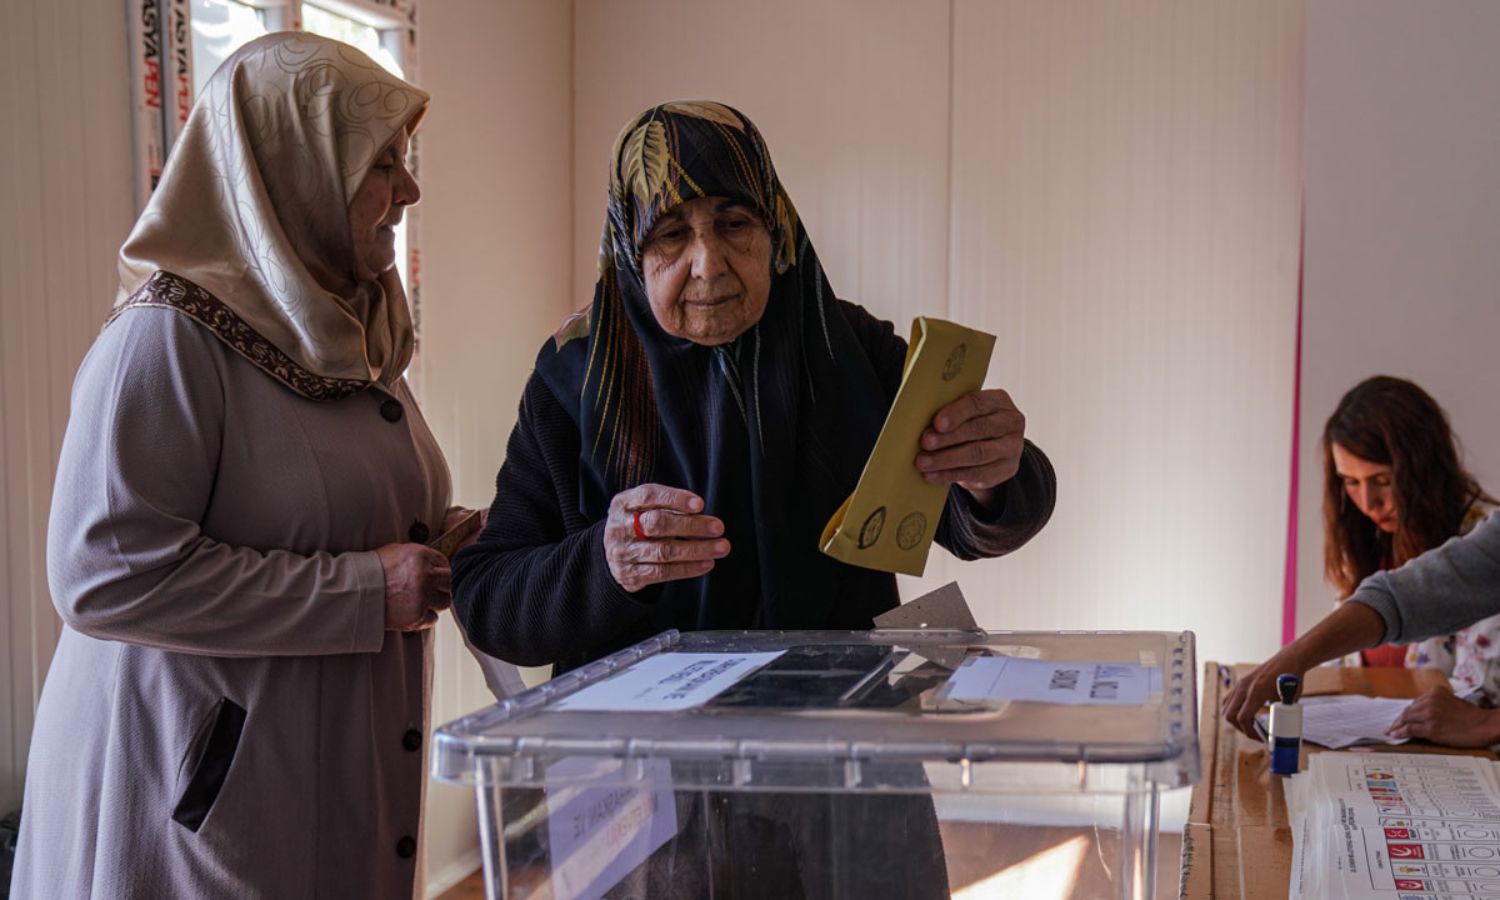 ناخبة تدلي بصوتها في الانتخابات الرئاسية والبرلمانية في تركيا ضمن المناطق التي ضربها الزلزال - 14 من أيار 2023 (hurriyet)